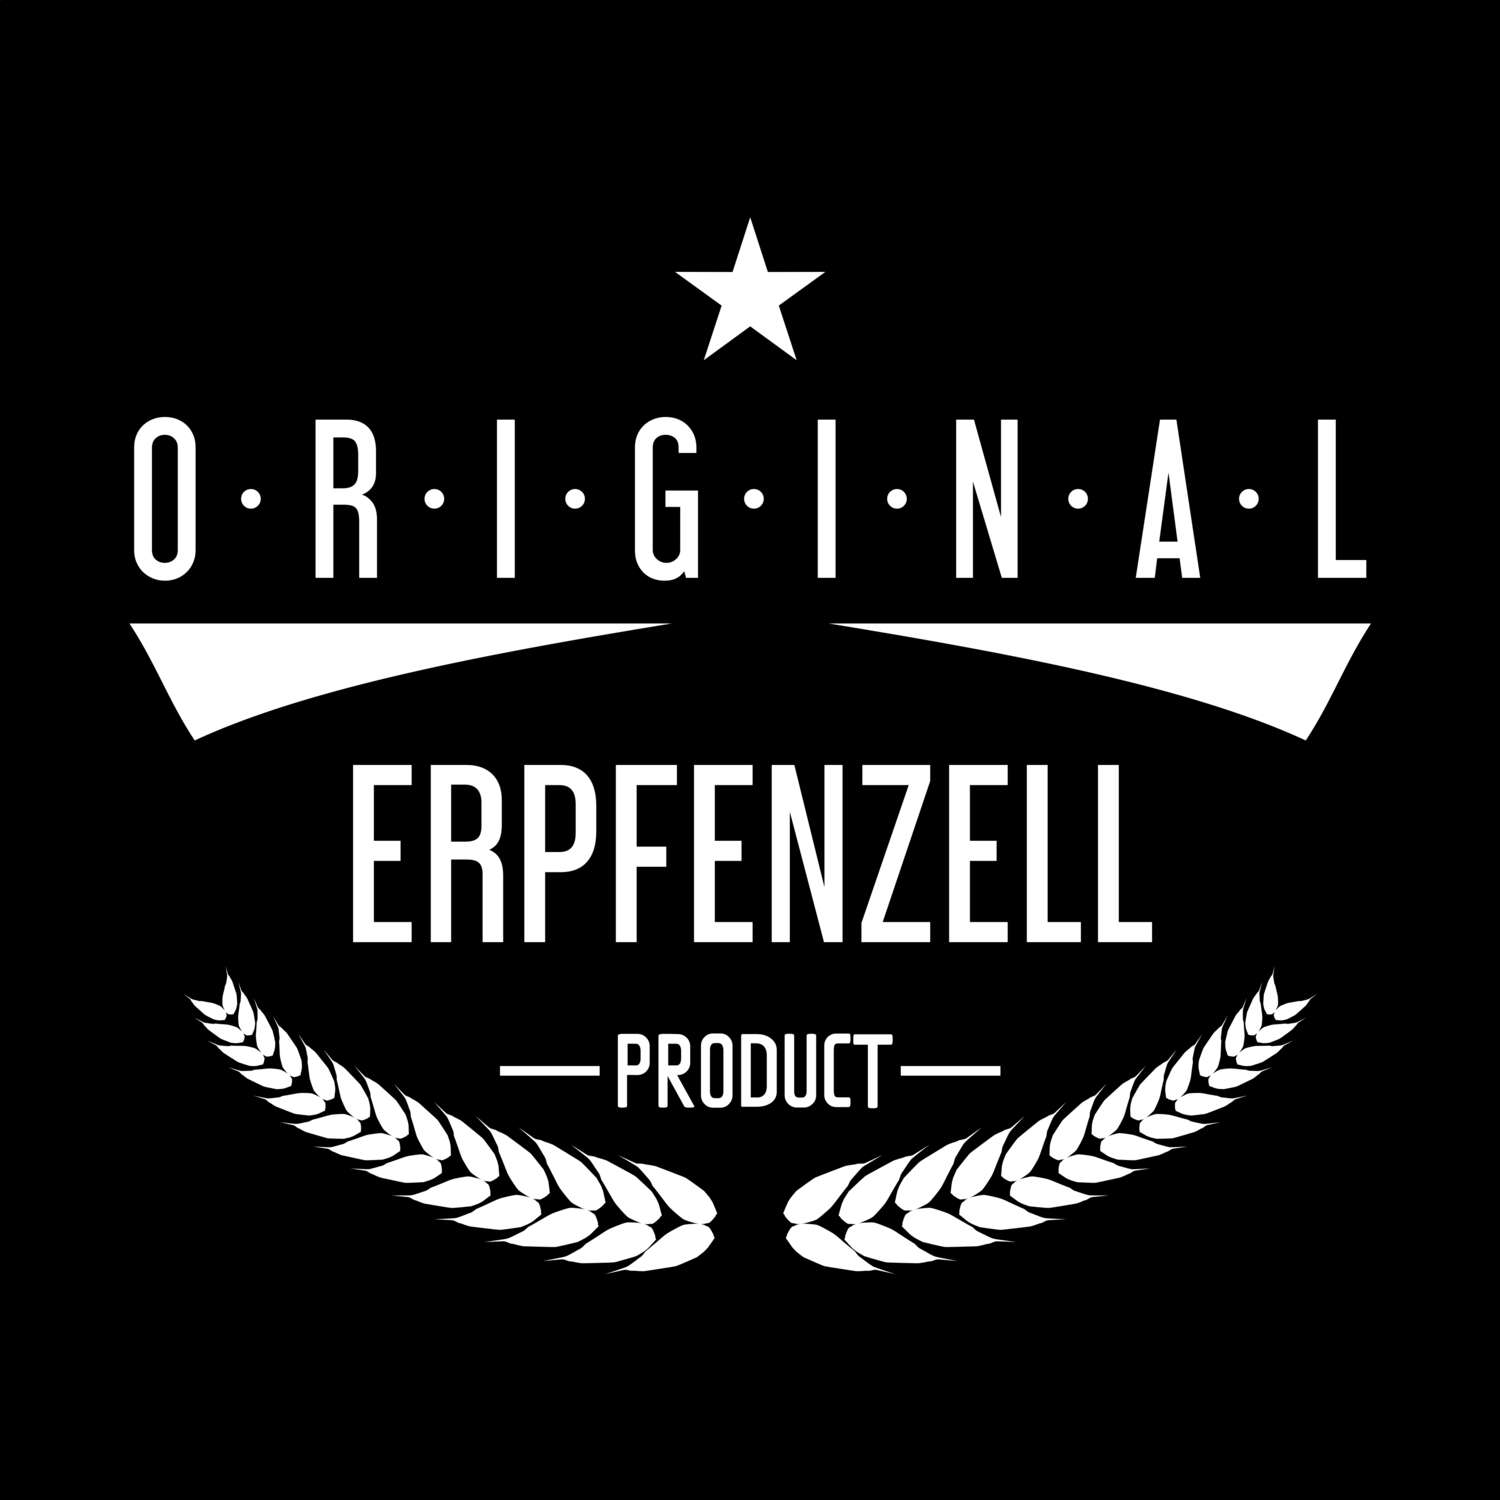 Erpfenzell T-Shirt »Original Product«